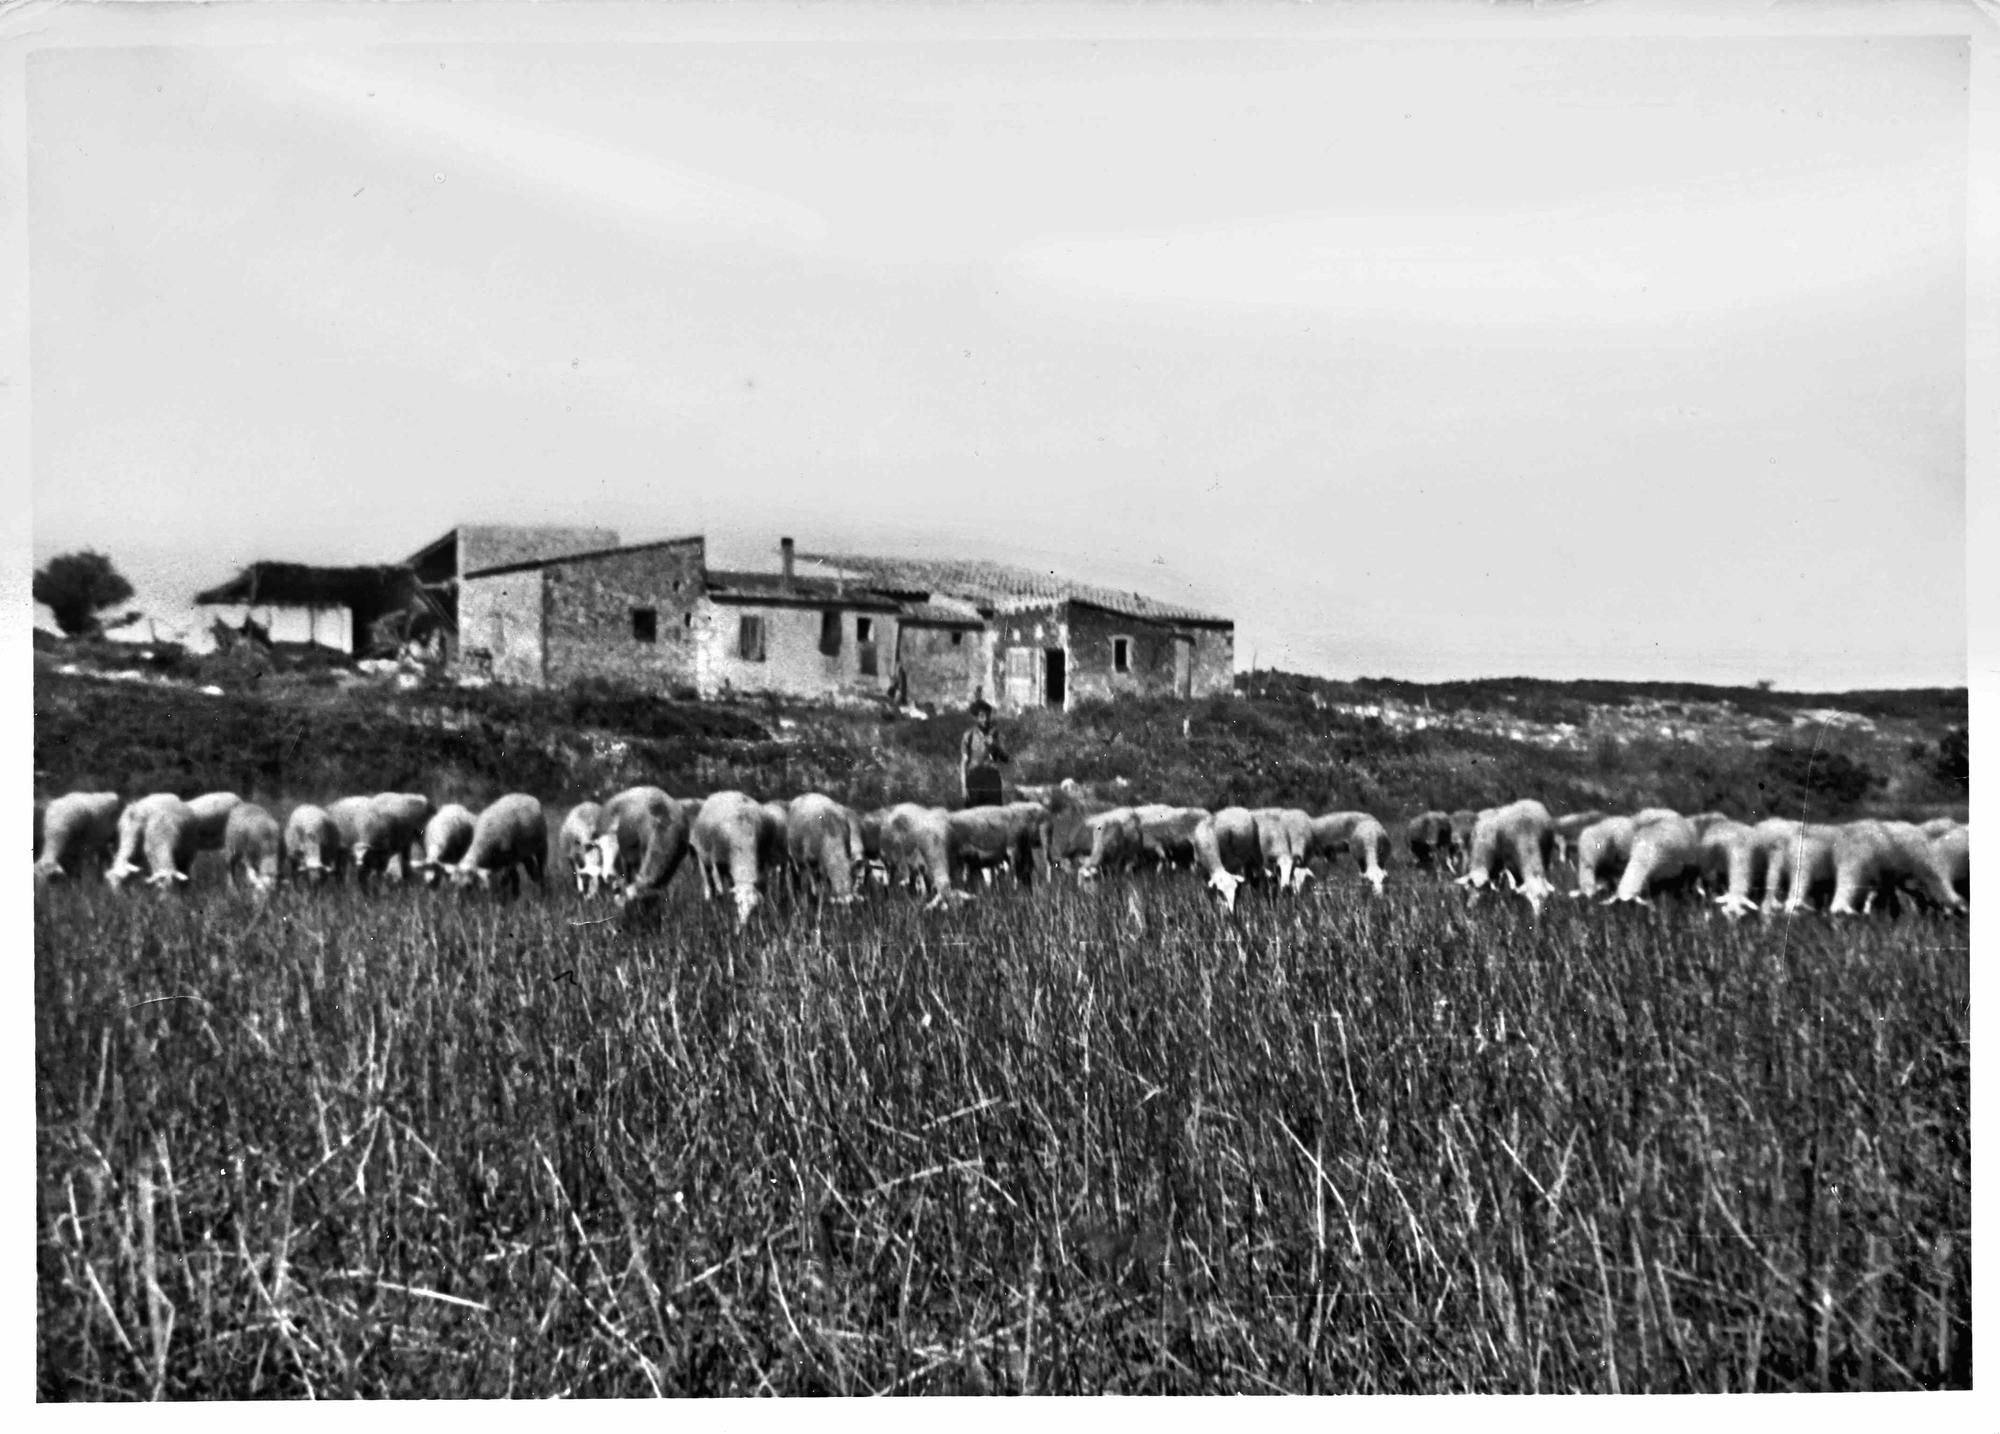 Pastor i ramat d'ovelles a la vora de l'estany de Poma, davant del mas d'en Pi.